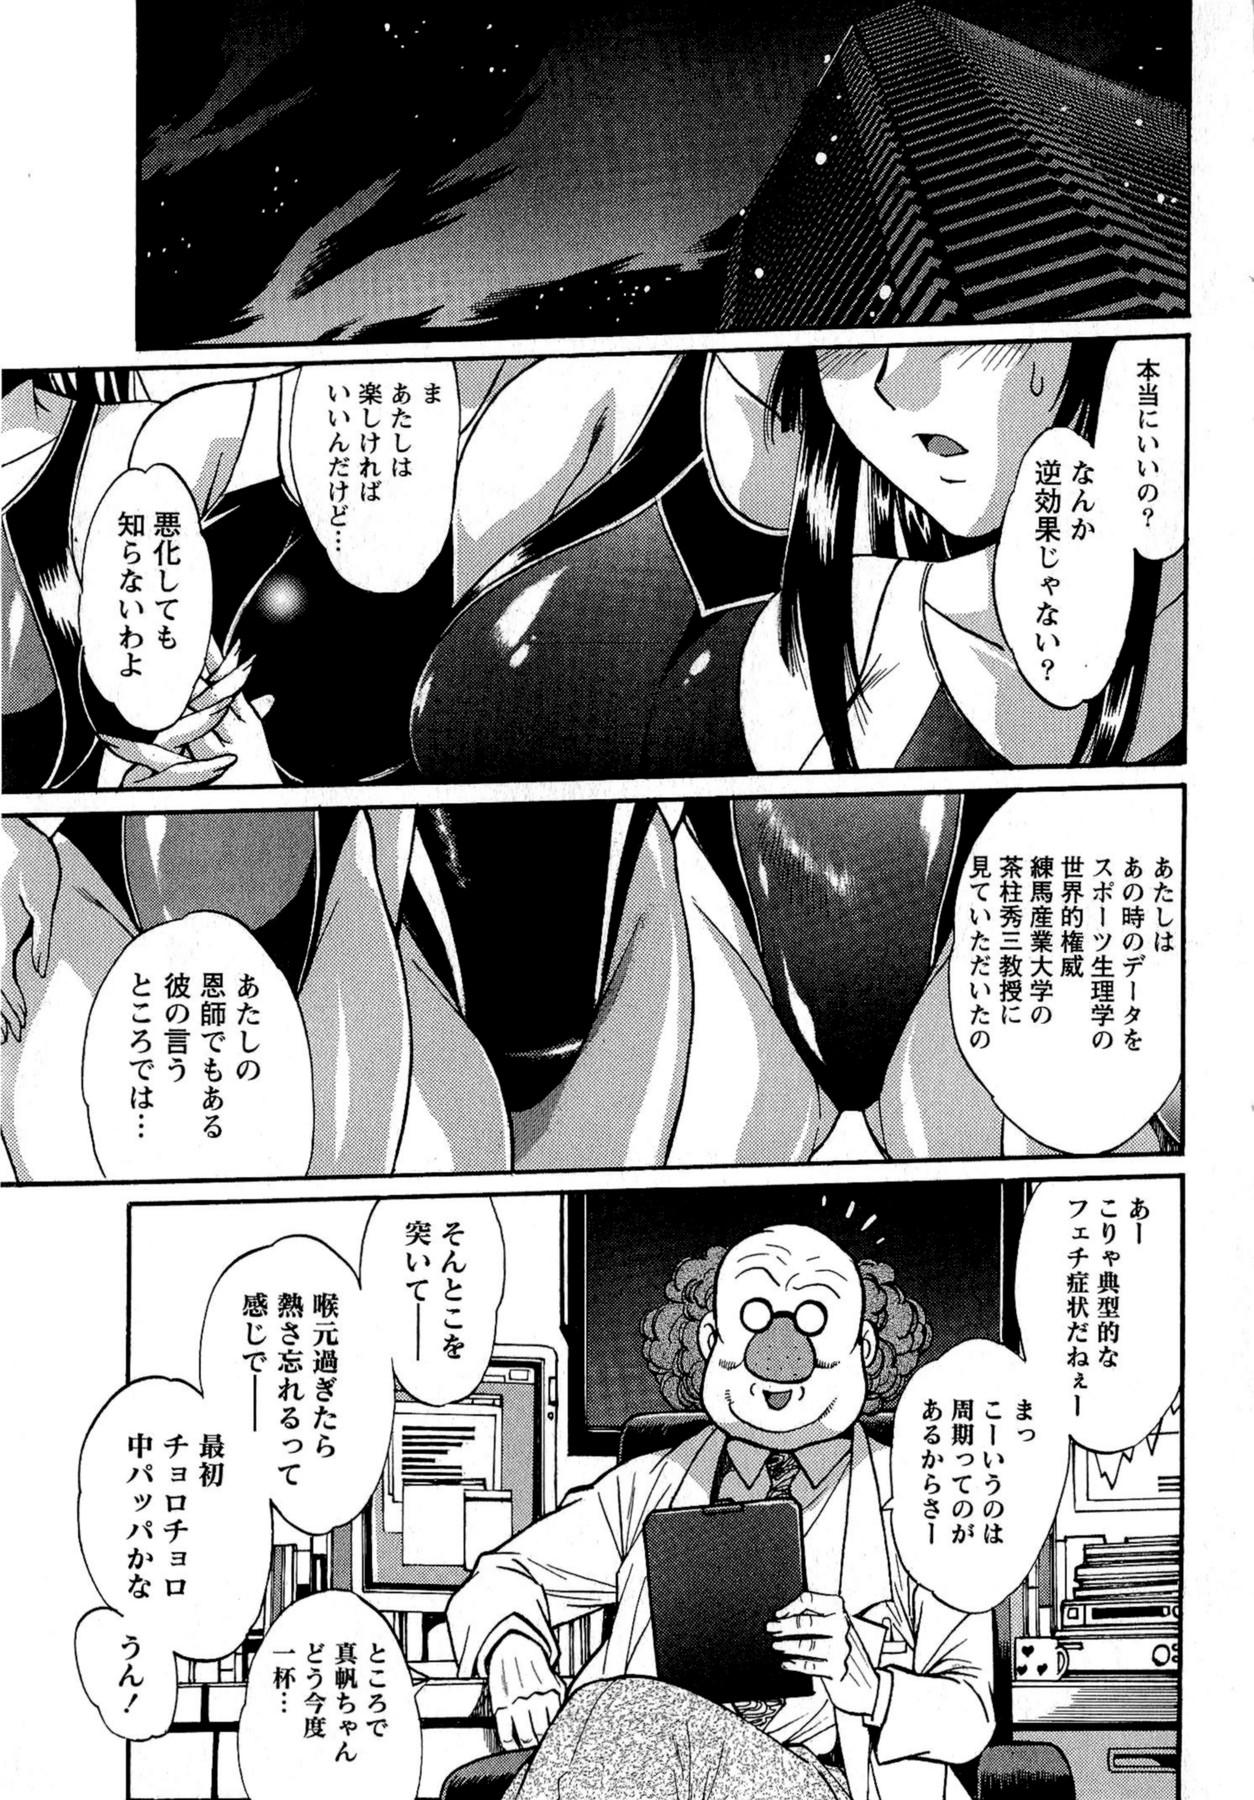 Kuikomi wo Naoshiteru Hima wa Nai! Vol. 2 36